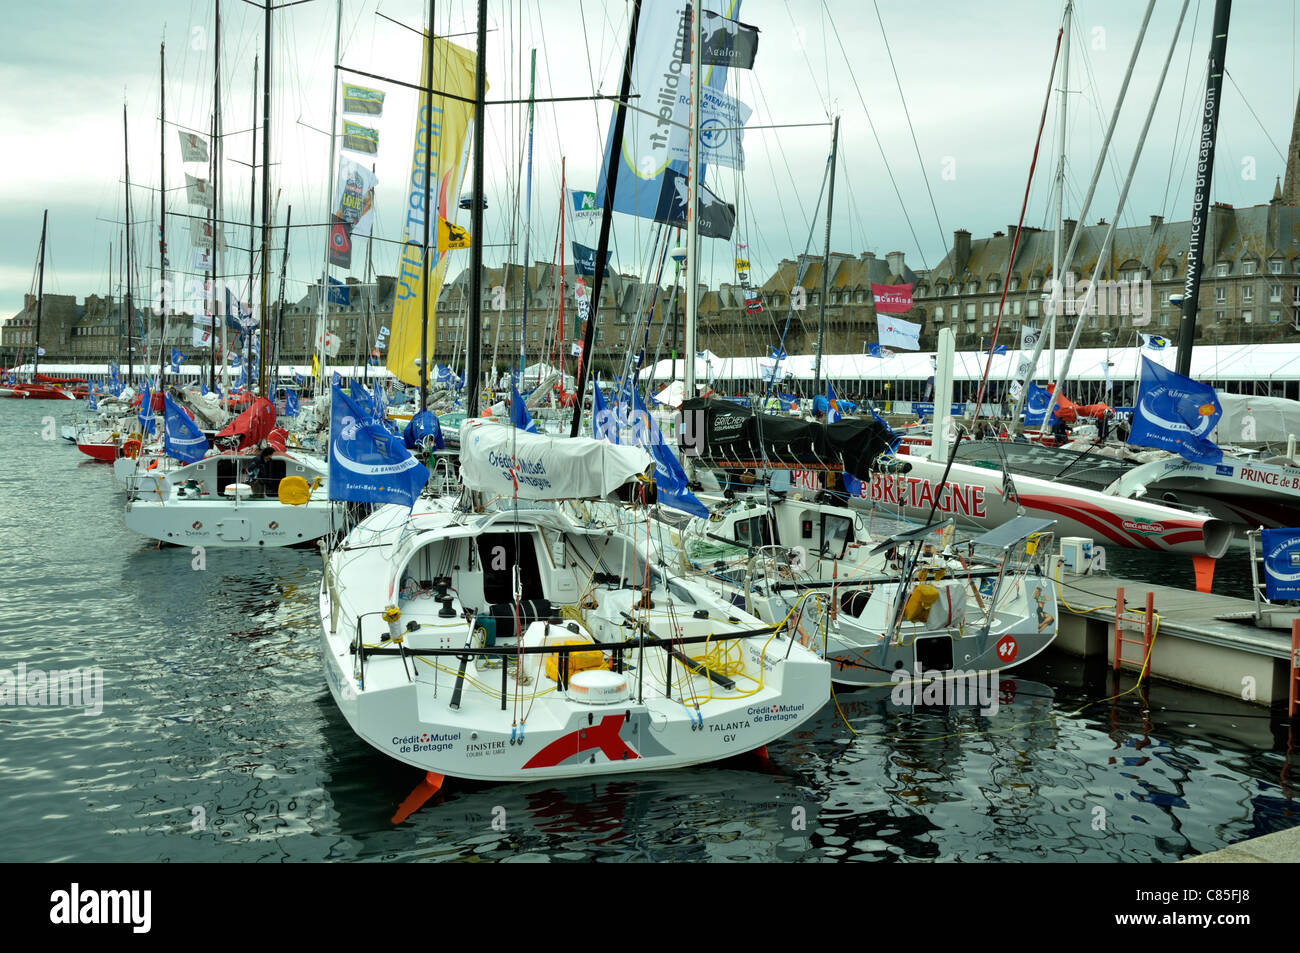 Route du Rhum, monohull racing barche nel porto di St Malo (Brittany, Francia). Foto Stock